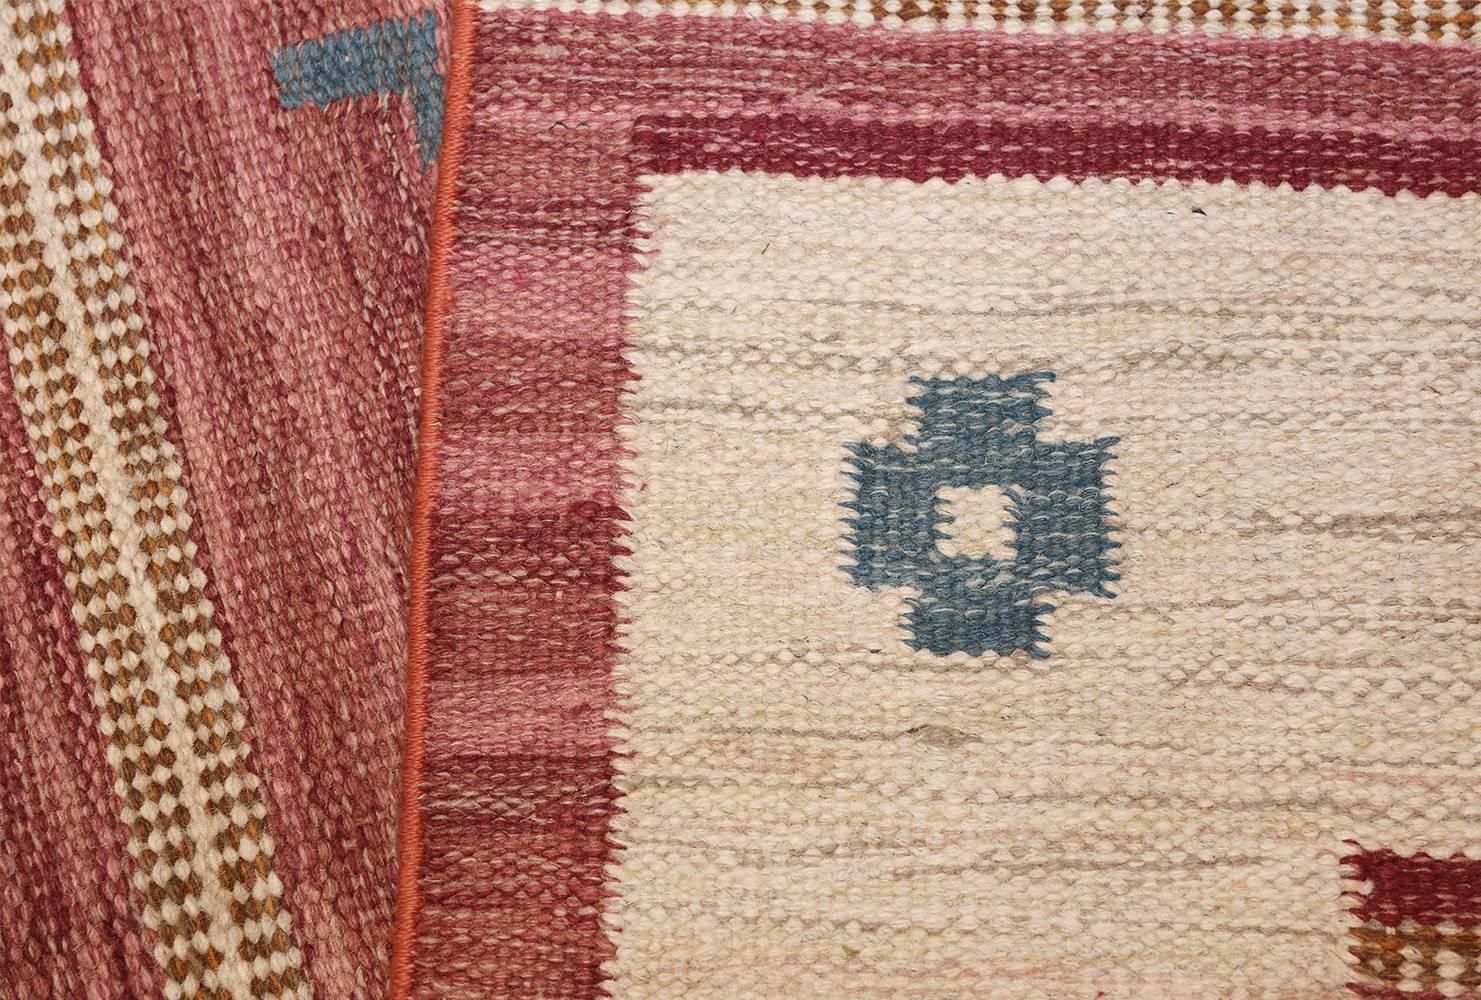 Wool Vintage Swedish Kilim by Svensk Hemslojd. Size: 5' 5